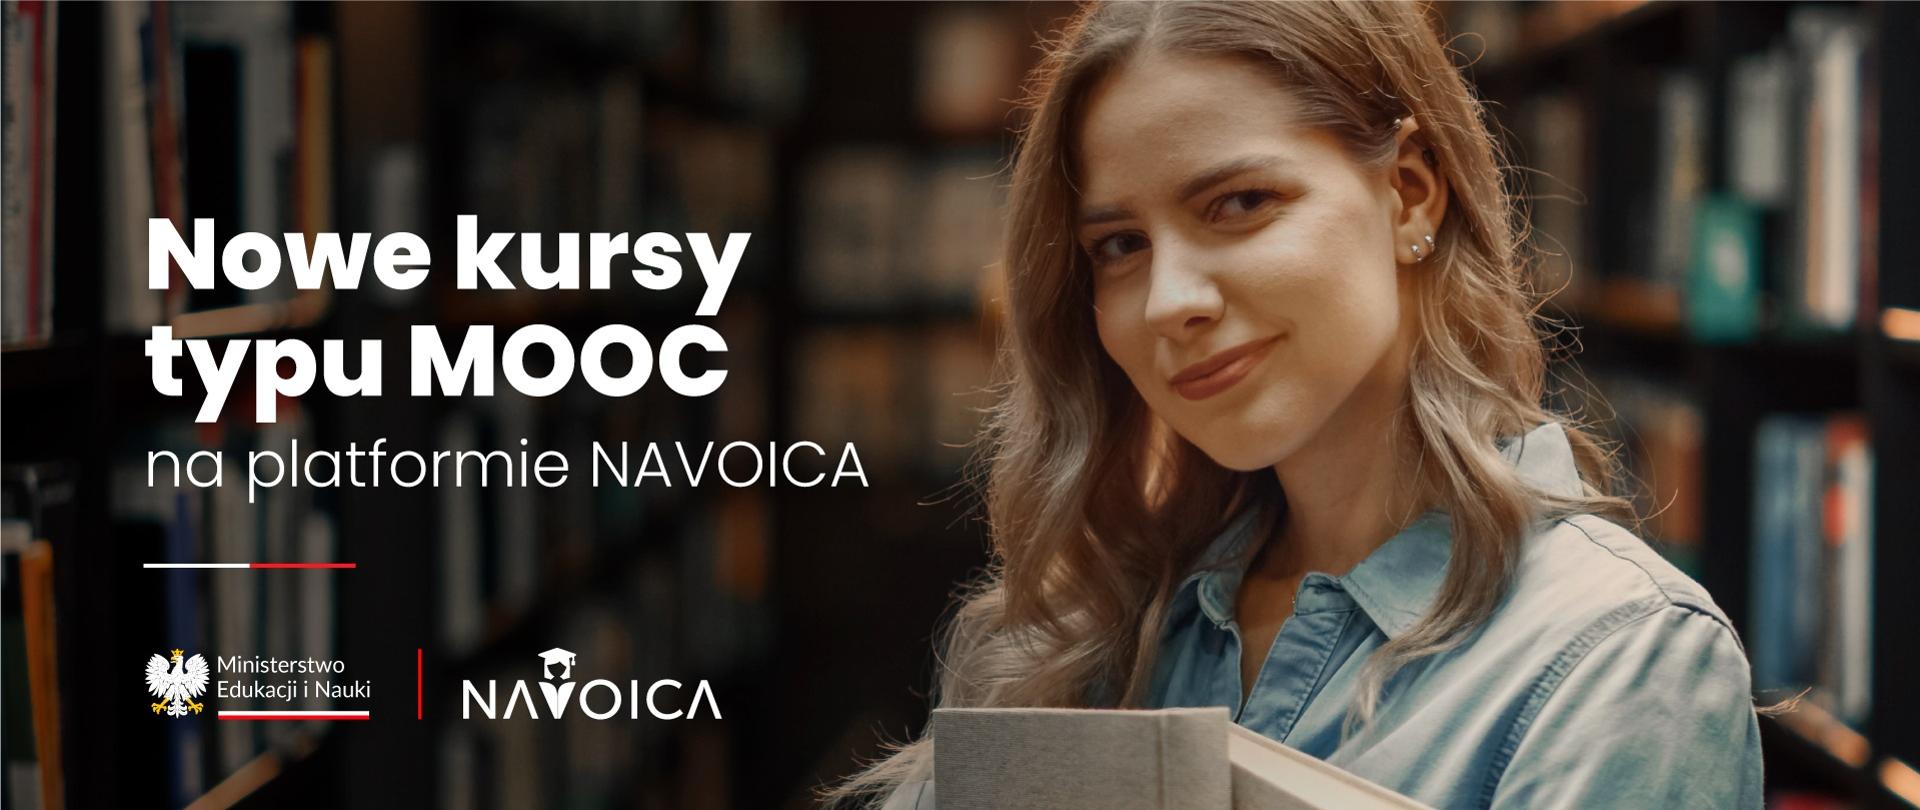 Młoda kobieta stoi w bibliotece, obok napis Nowe kursy typu MOOC na platformie Navoica.